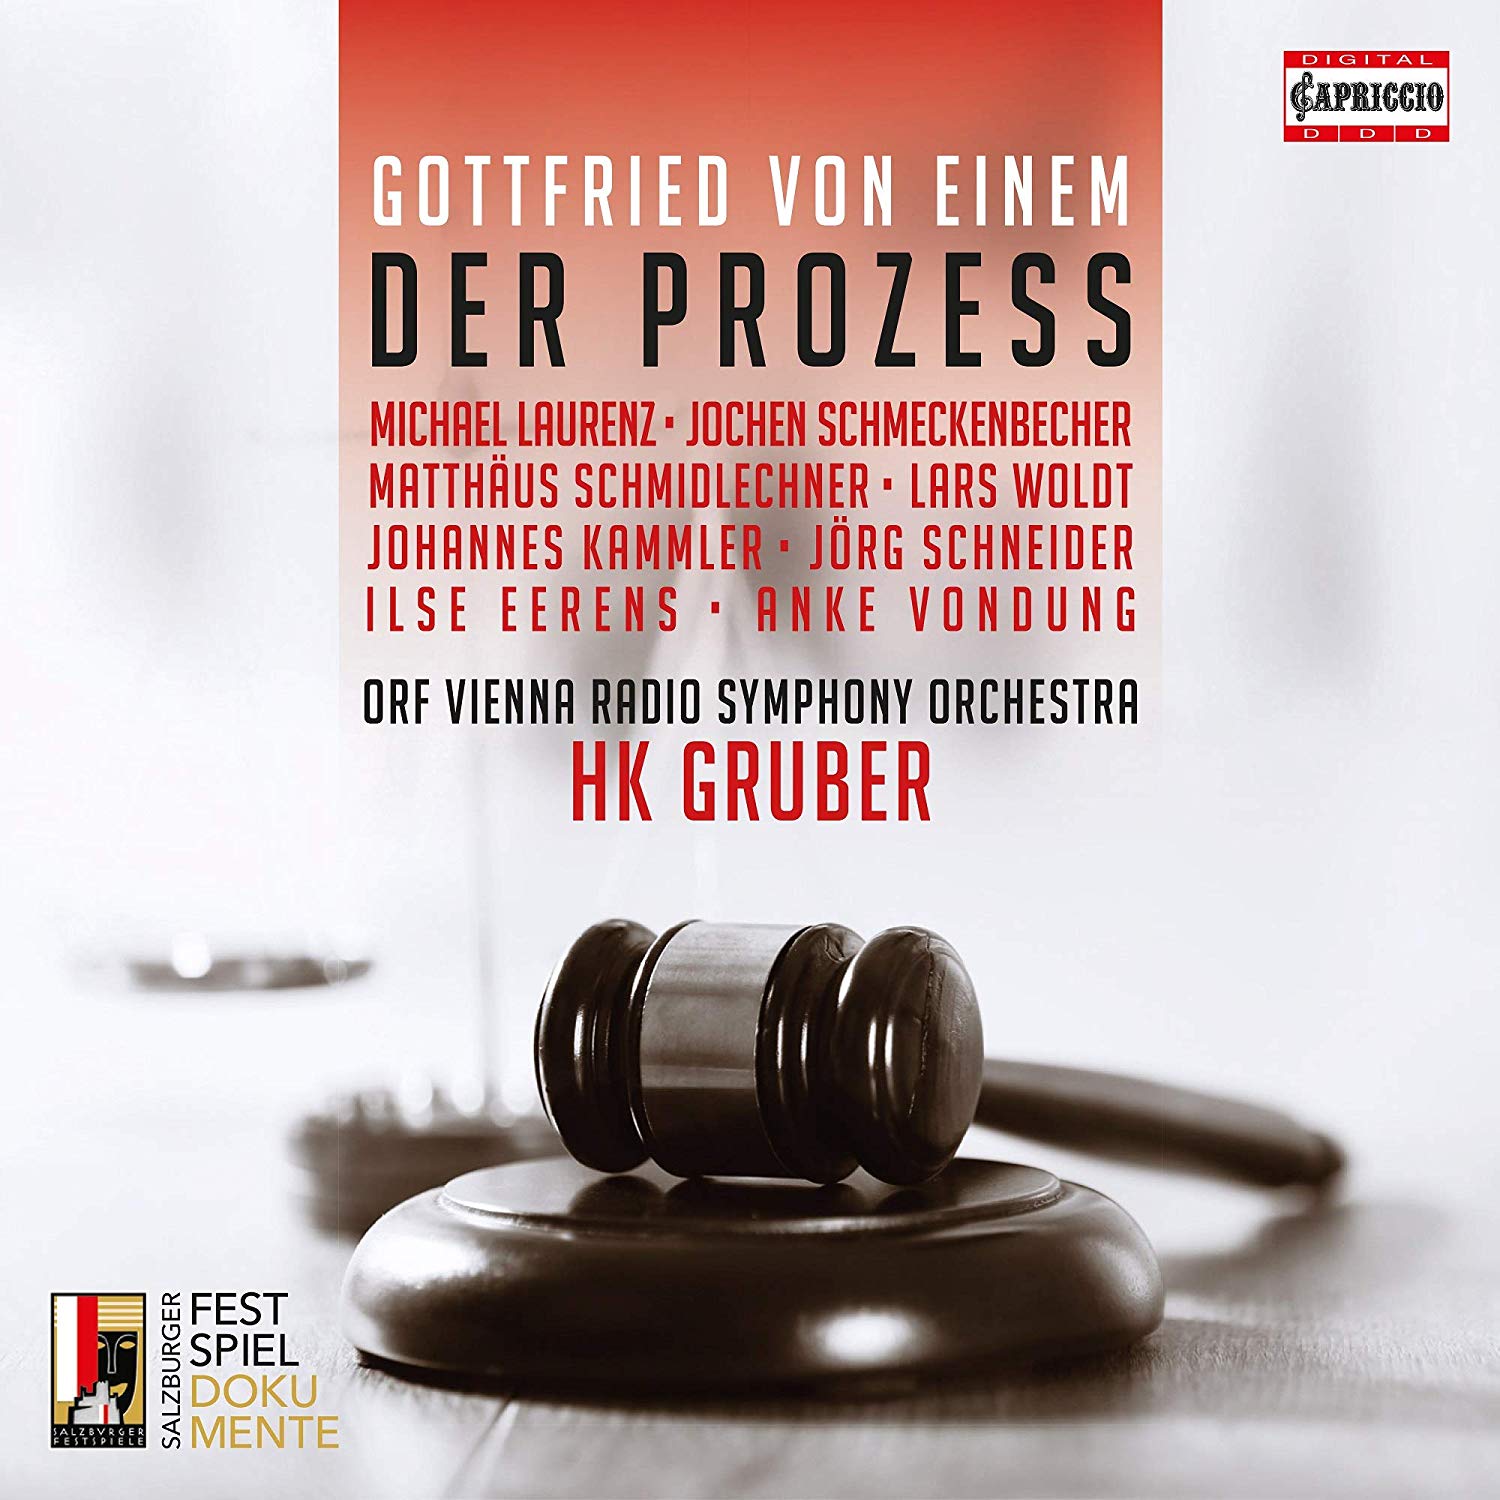 Audio Cd Gottfried Von Einem - Der Prozess (2 Cd) NUOVO SIGILLATO, EDIZIONE DEL 27/03/2019 SUBITO DISPONIBILE